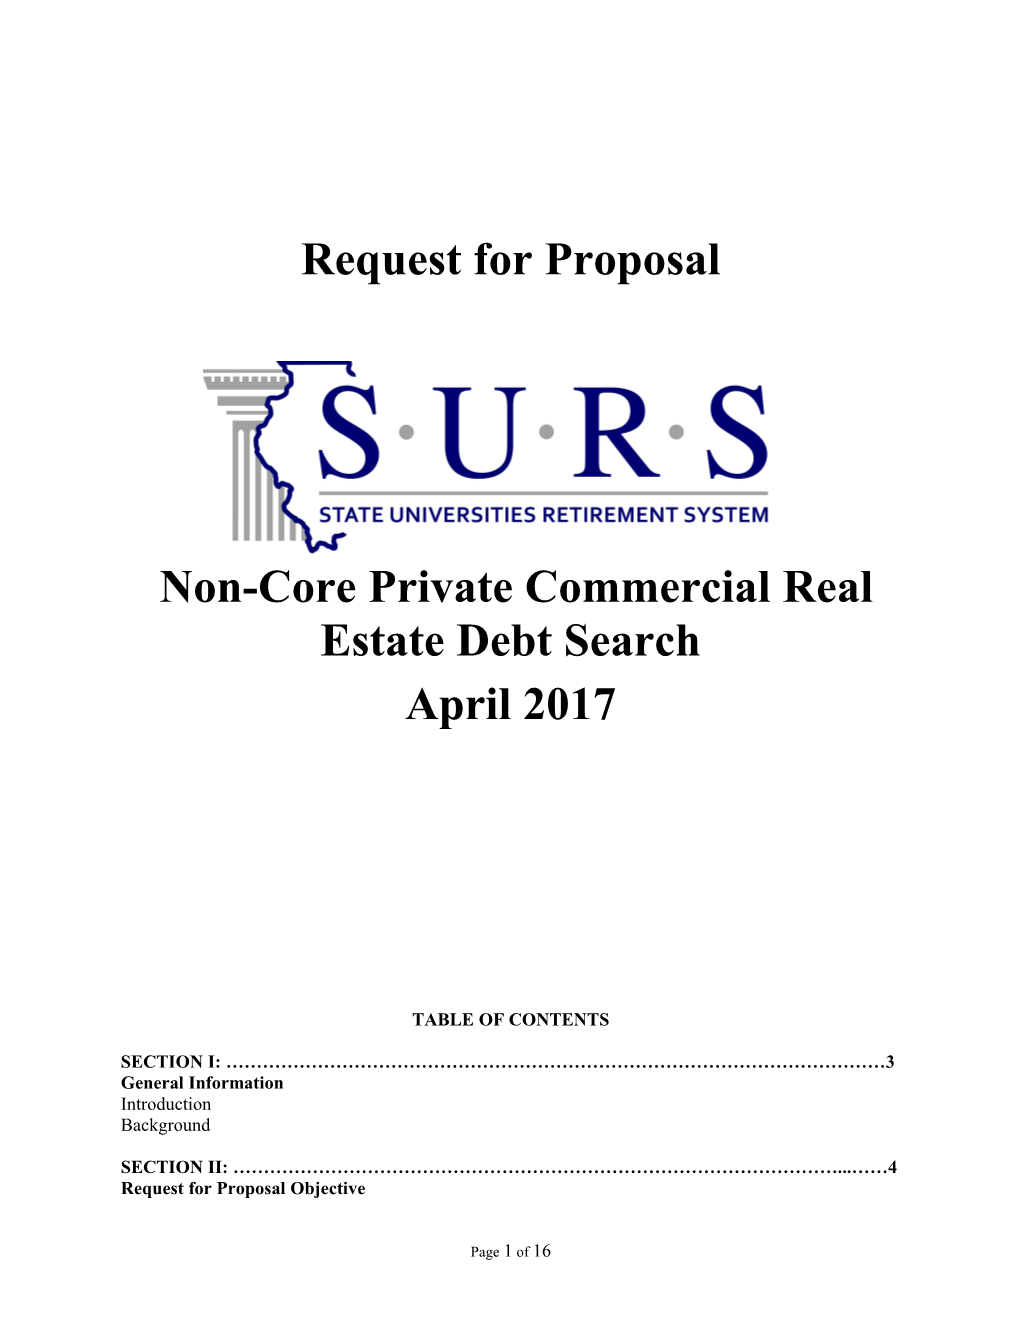 Non-Core Private Commercial Real Estate Debt Search